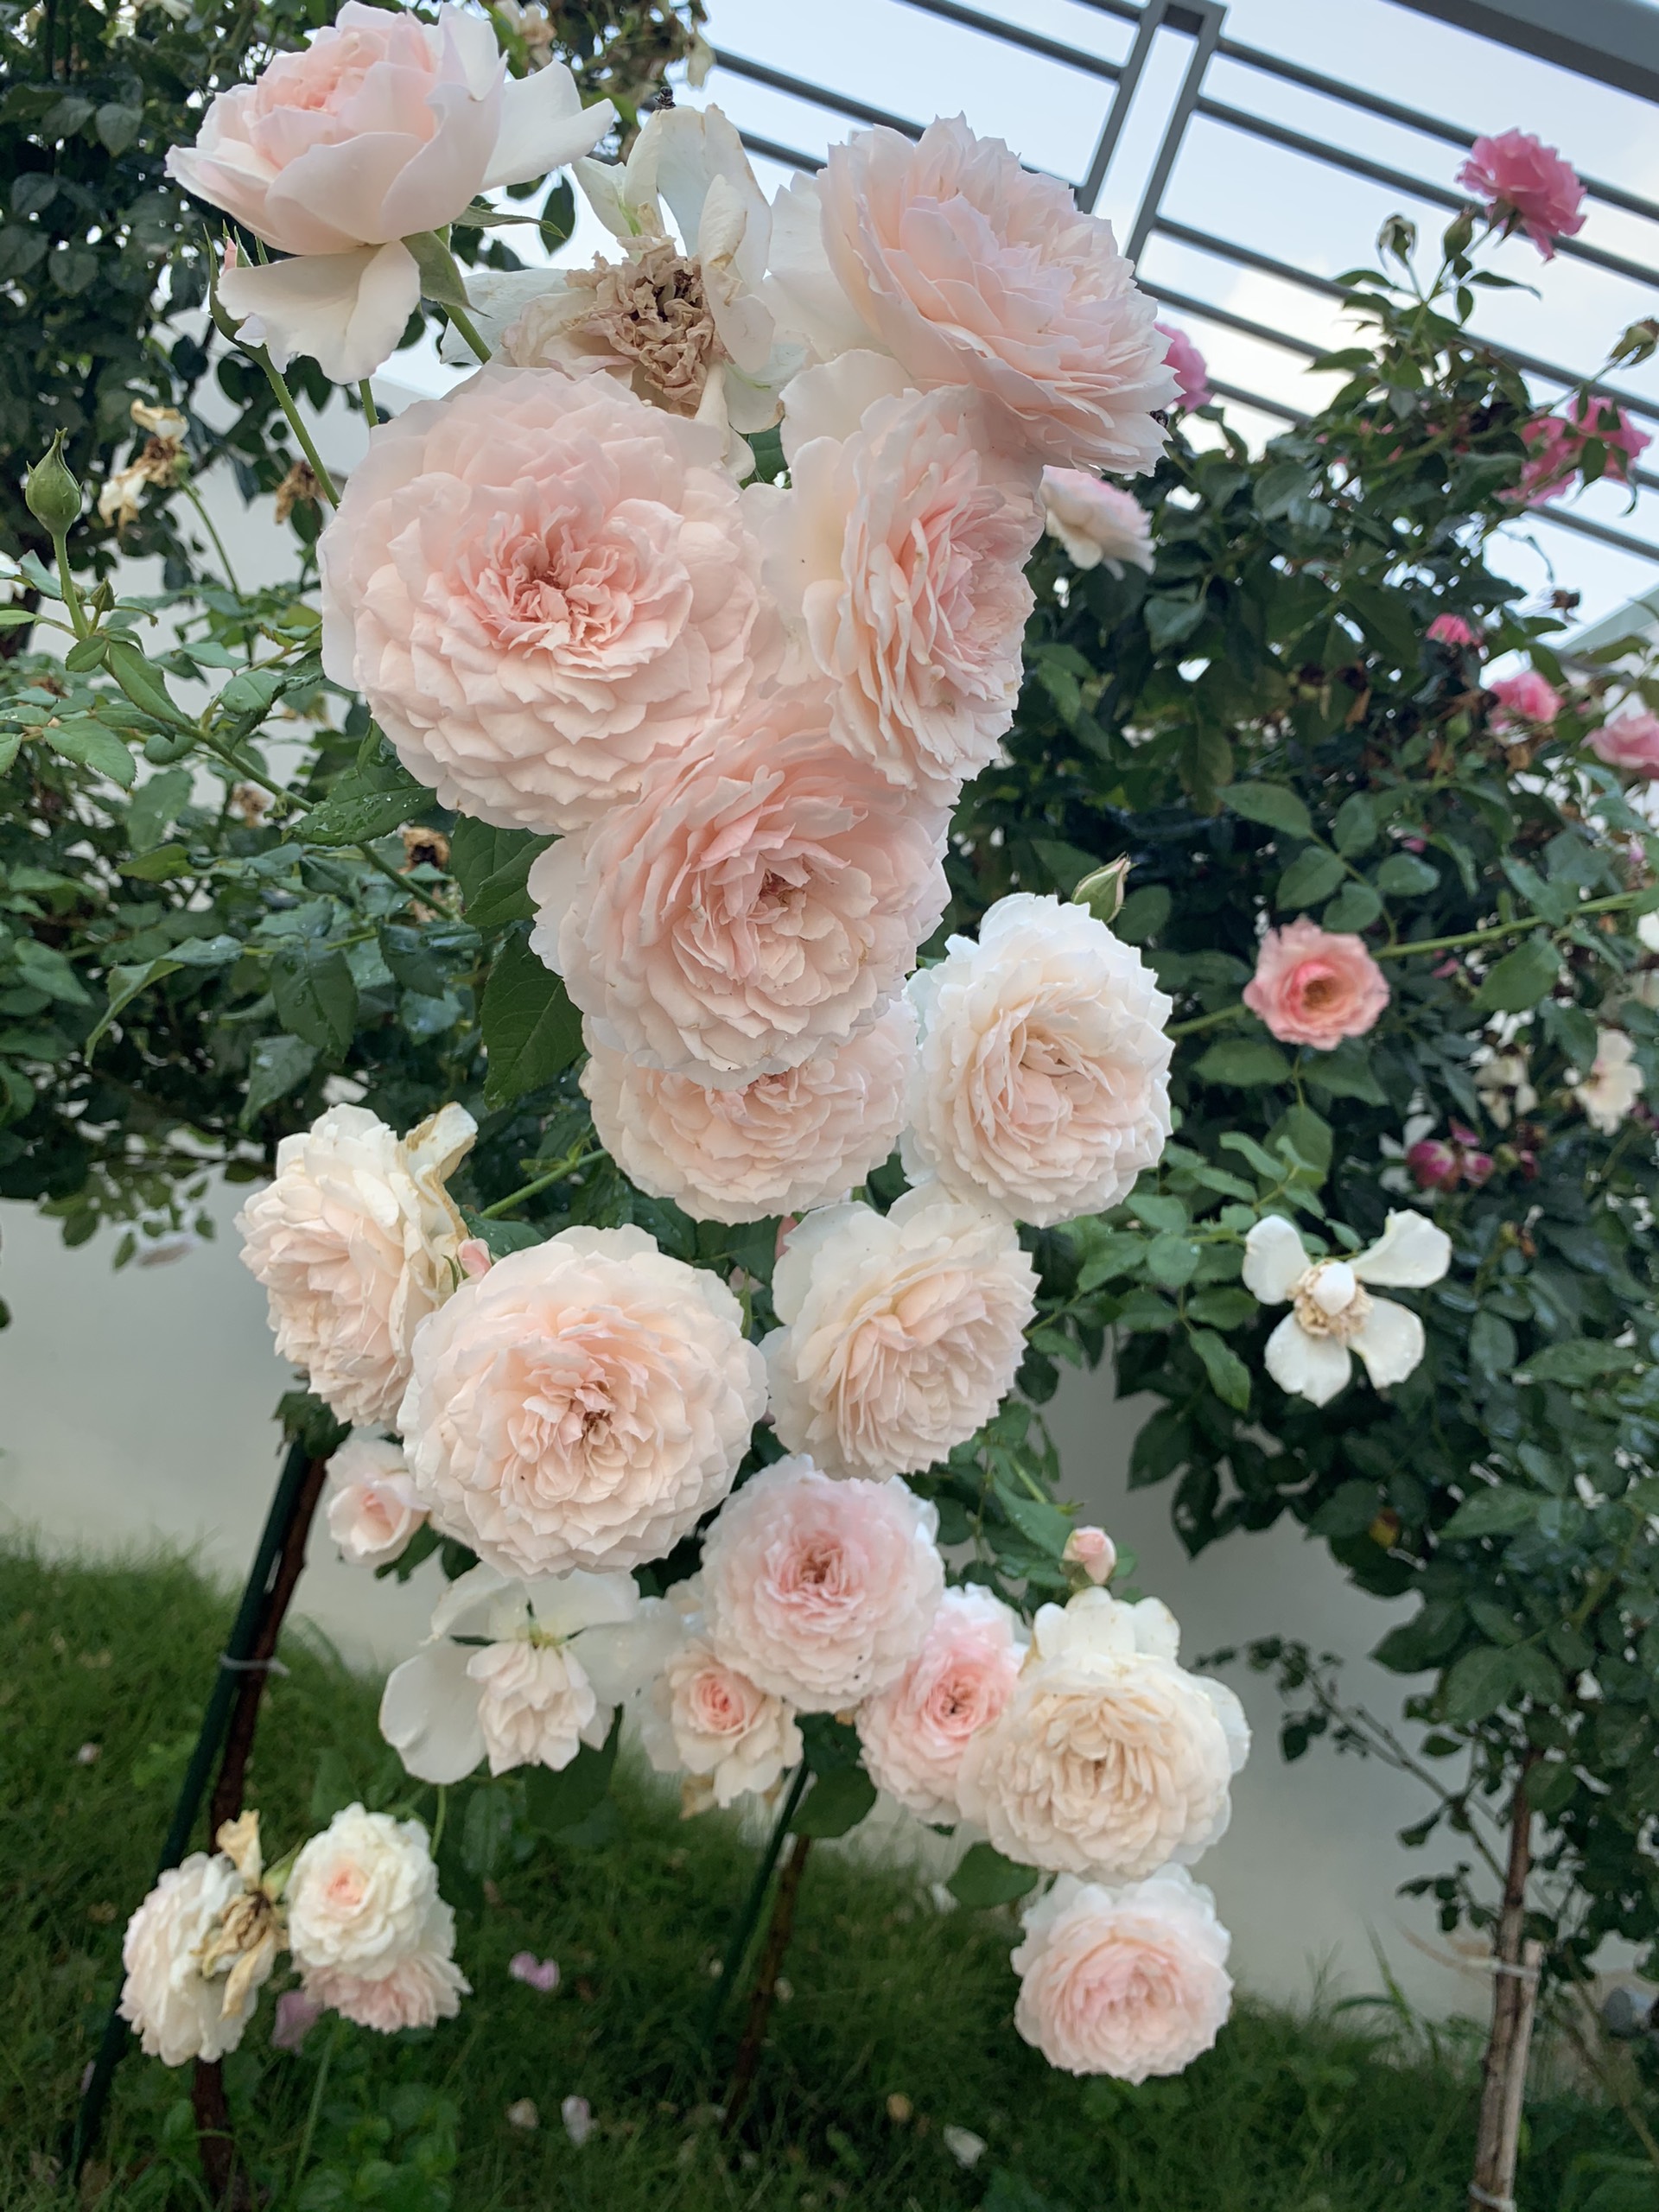 Ảnh hoa hồng đẹp tự nhiên sẽ đưa bạn vào một thế giới tuyệt đẹp, nơi mà sắc hương và tình yêu được thể hiện rõ nét. Hãy dành chút thời gian để chiêm ngưỡng và cảm nhận những điều tuyệt vời mà thiên nhiên mang lại.